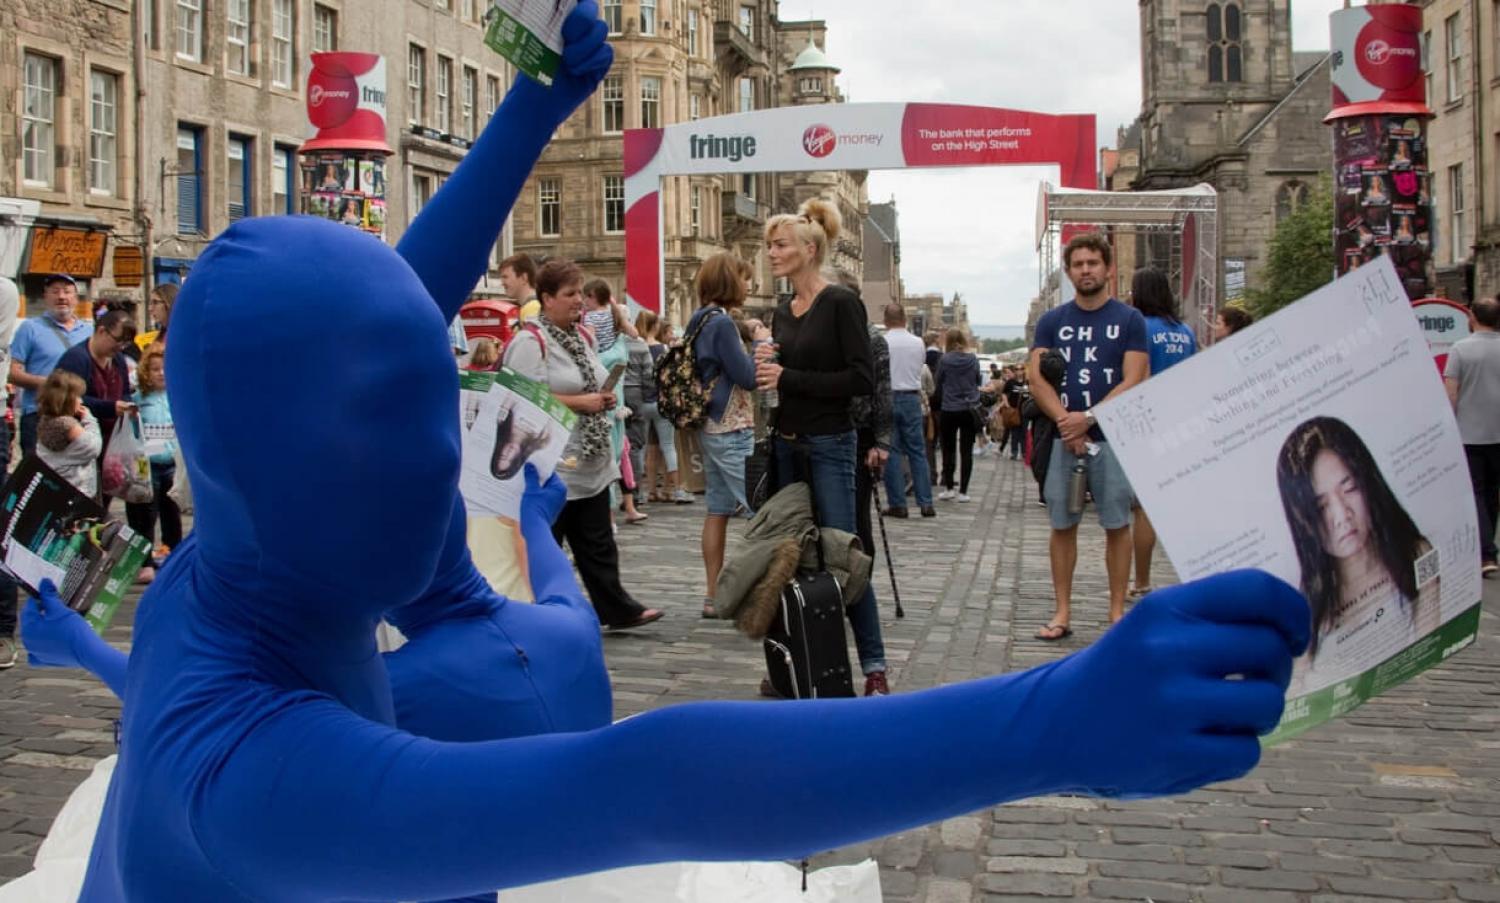 Performers handing out leaflets at Edinburgh Fringe Festival, Royal Mile